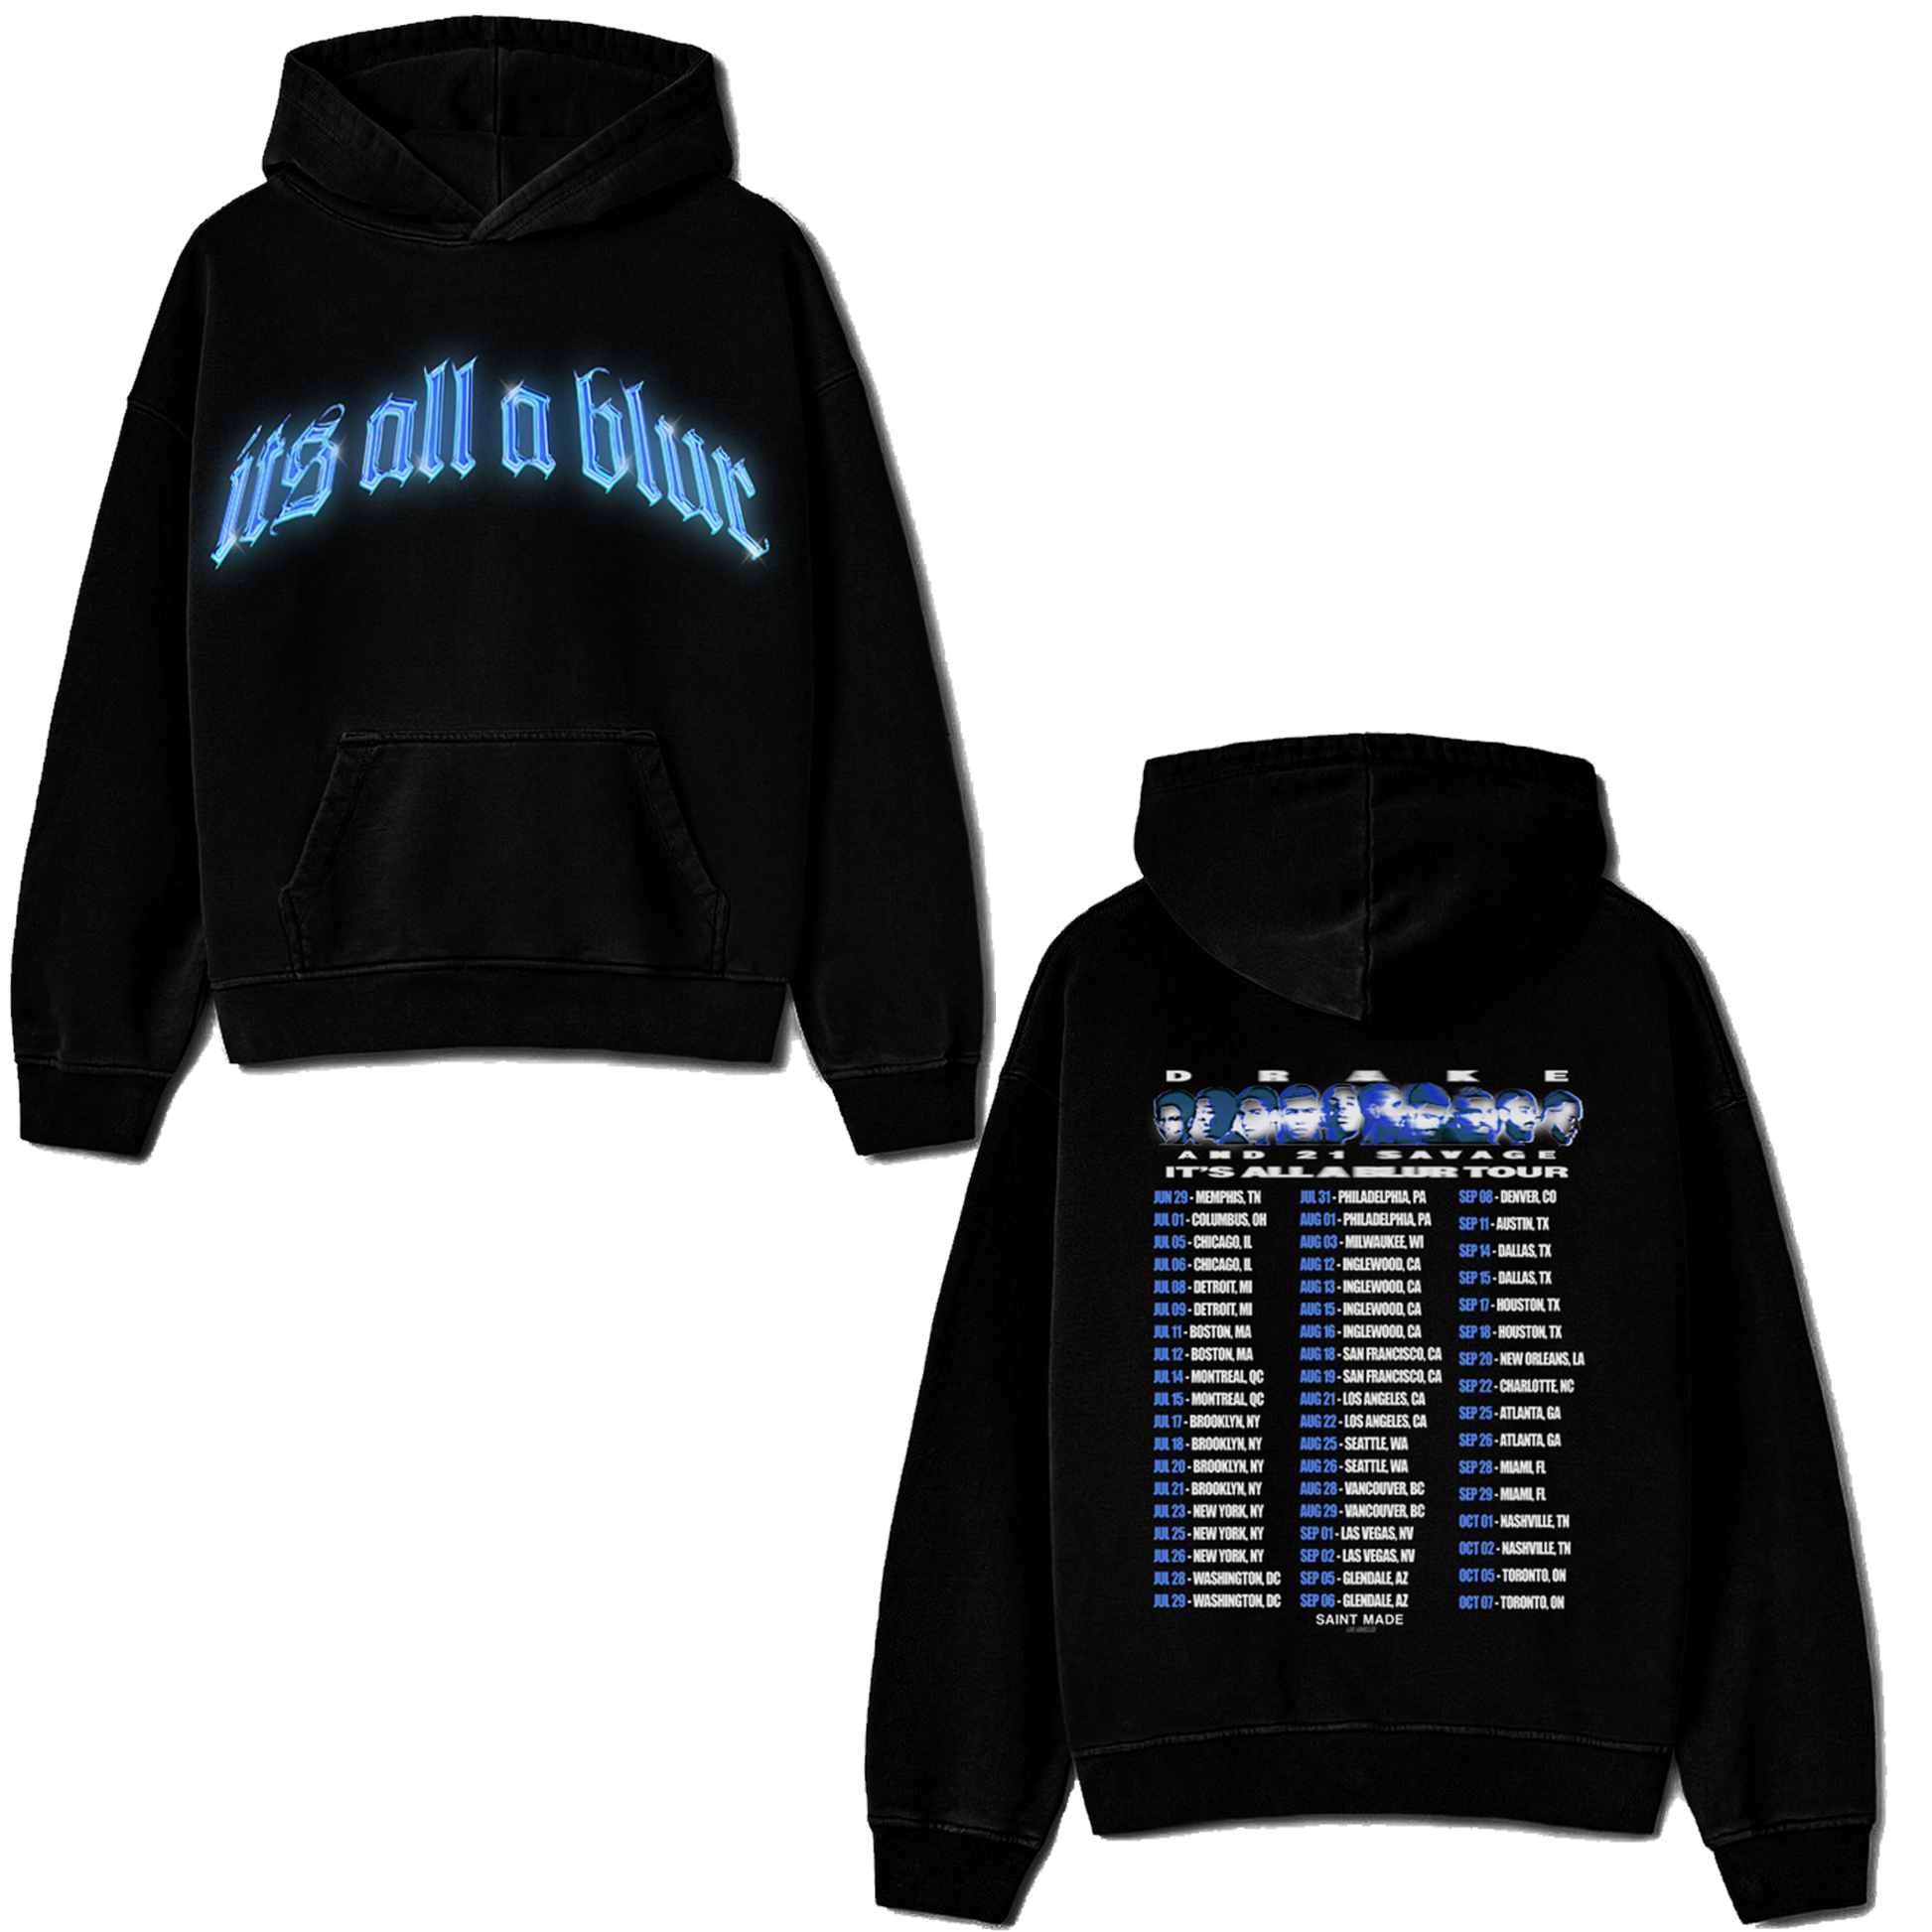 drake it's all a blur tour merch hoodie